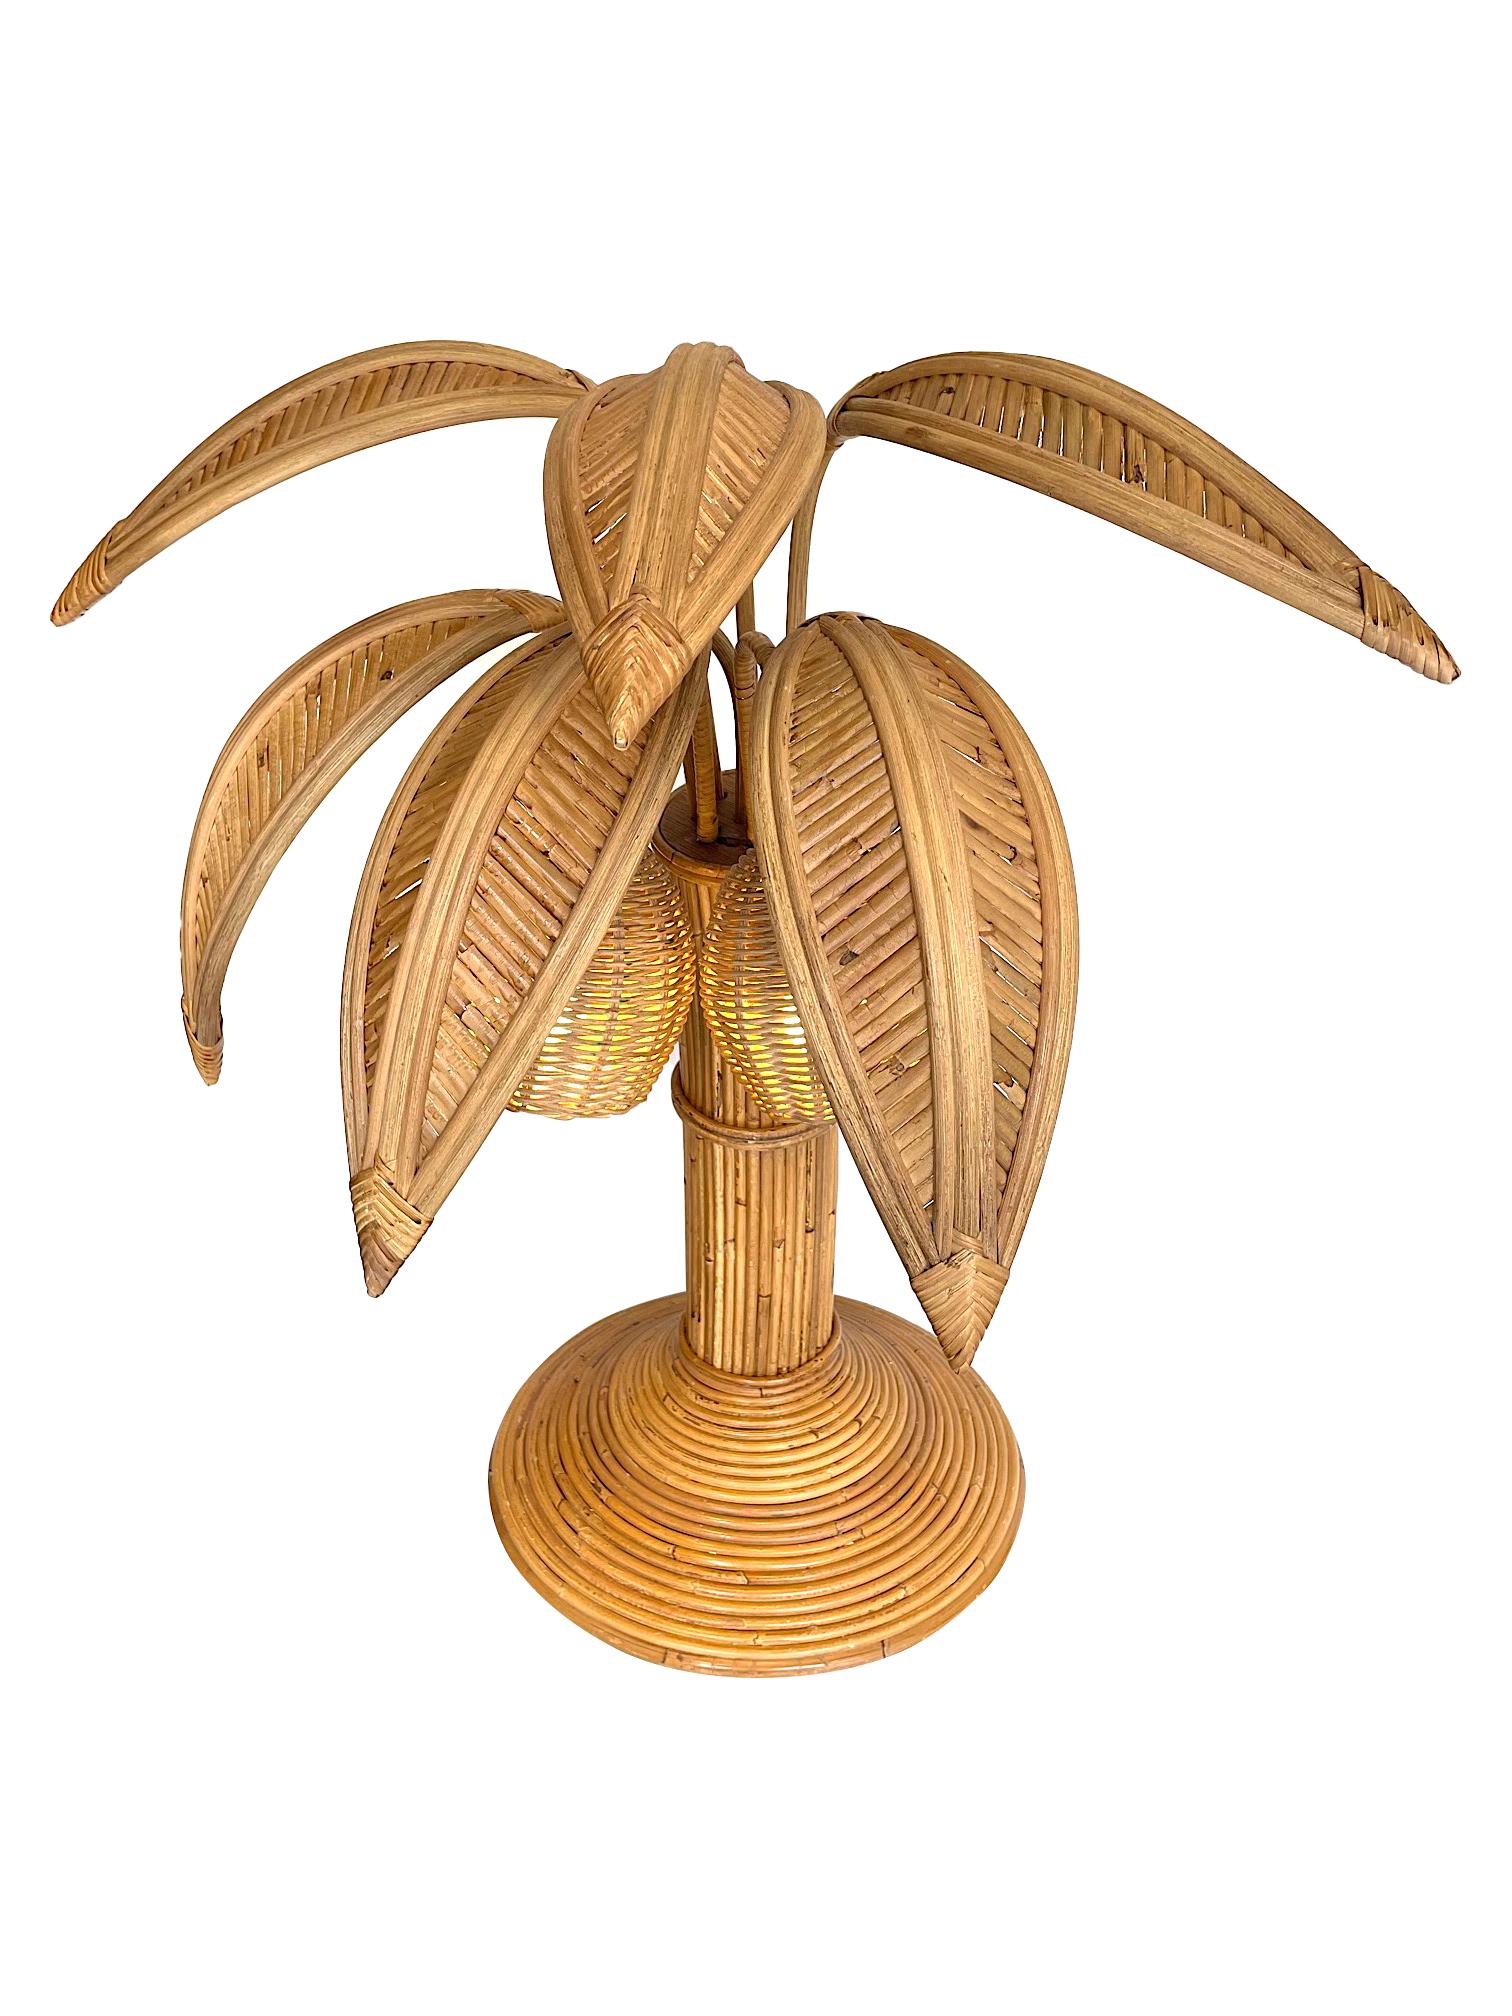 Une lampe de table en forme de palmier en bambou dans le style de Mario Lopez Torres avec deux lampes en noix de coco sous les feuilles.